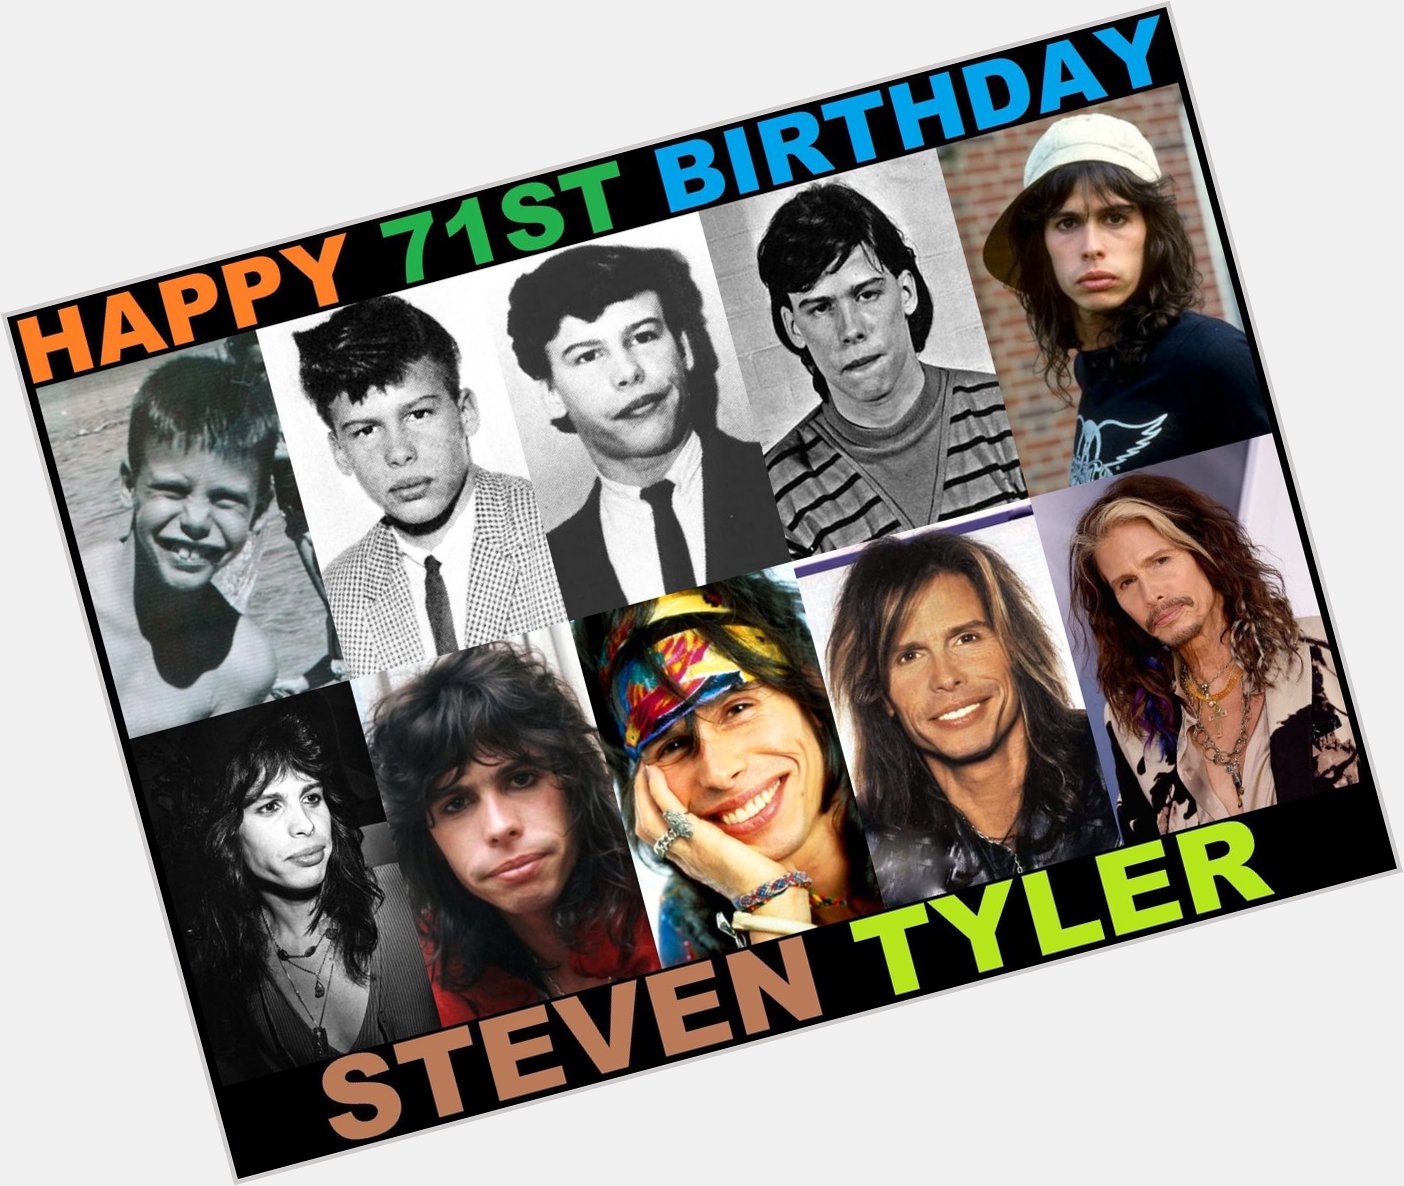 Happy 71st birthday, Steven Tyler Of Aerosmith! 